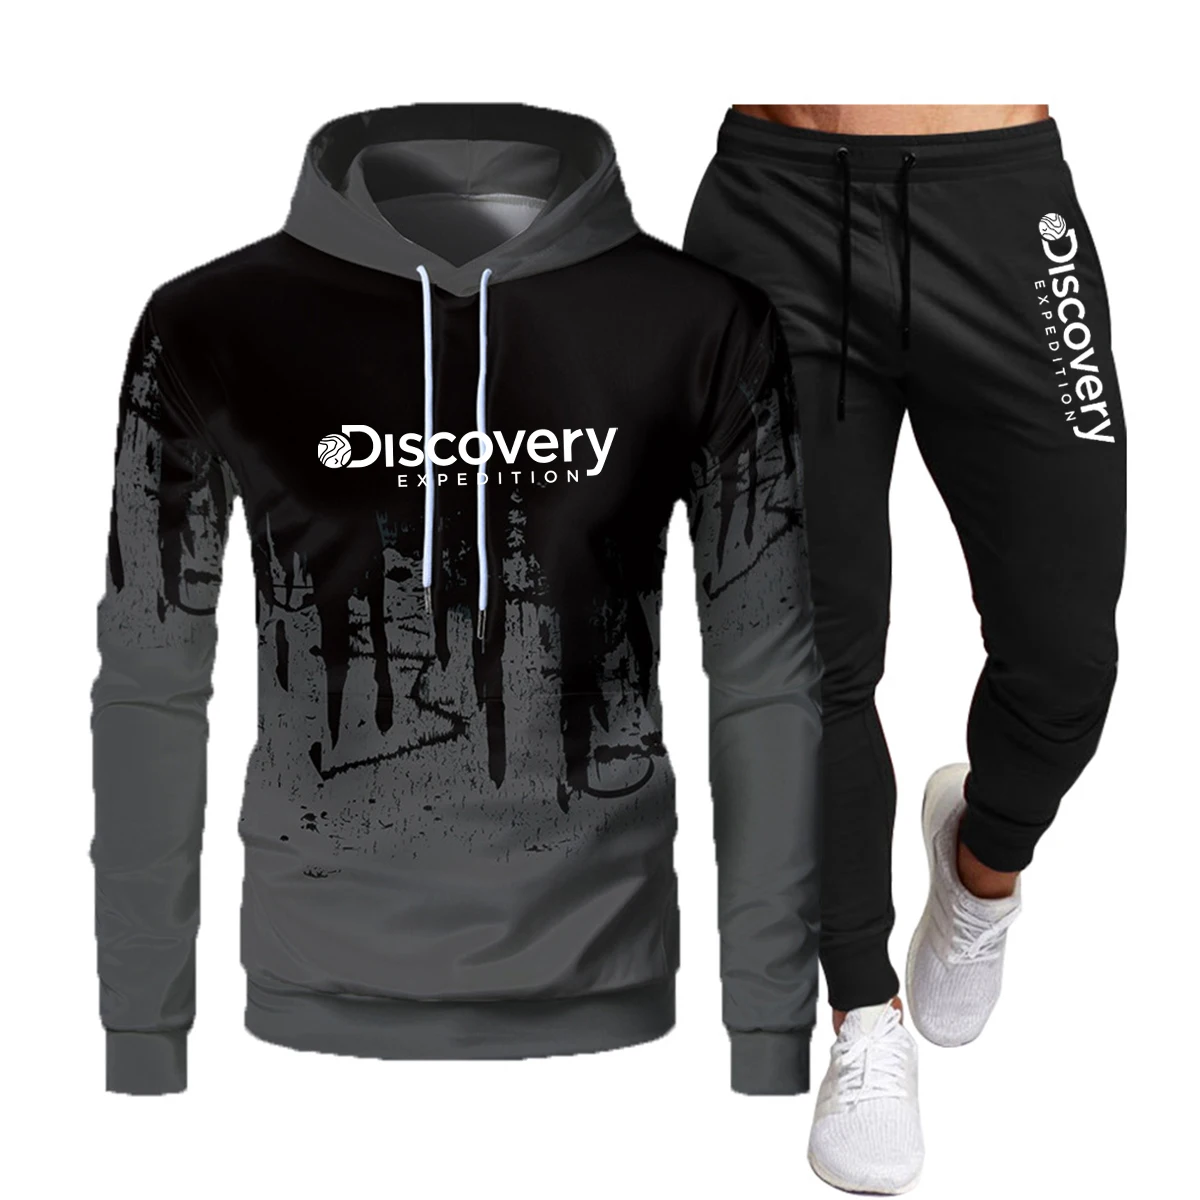 Discovery channel Роскошные печатные стандартные толстовки и брюки, женская спортивная брендовая одежда